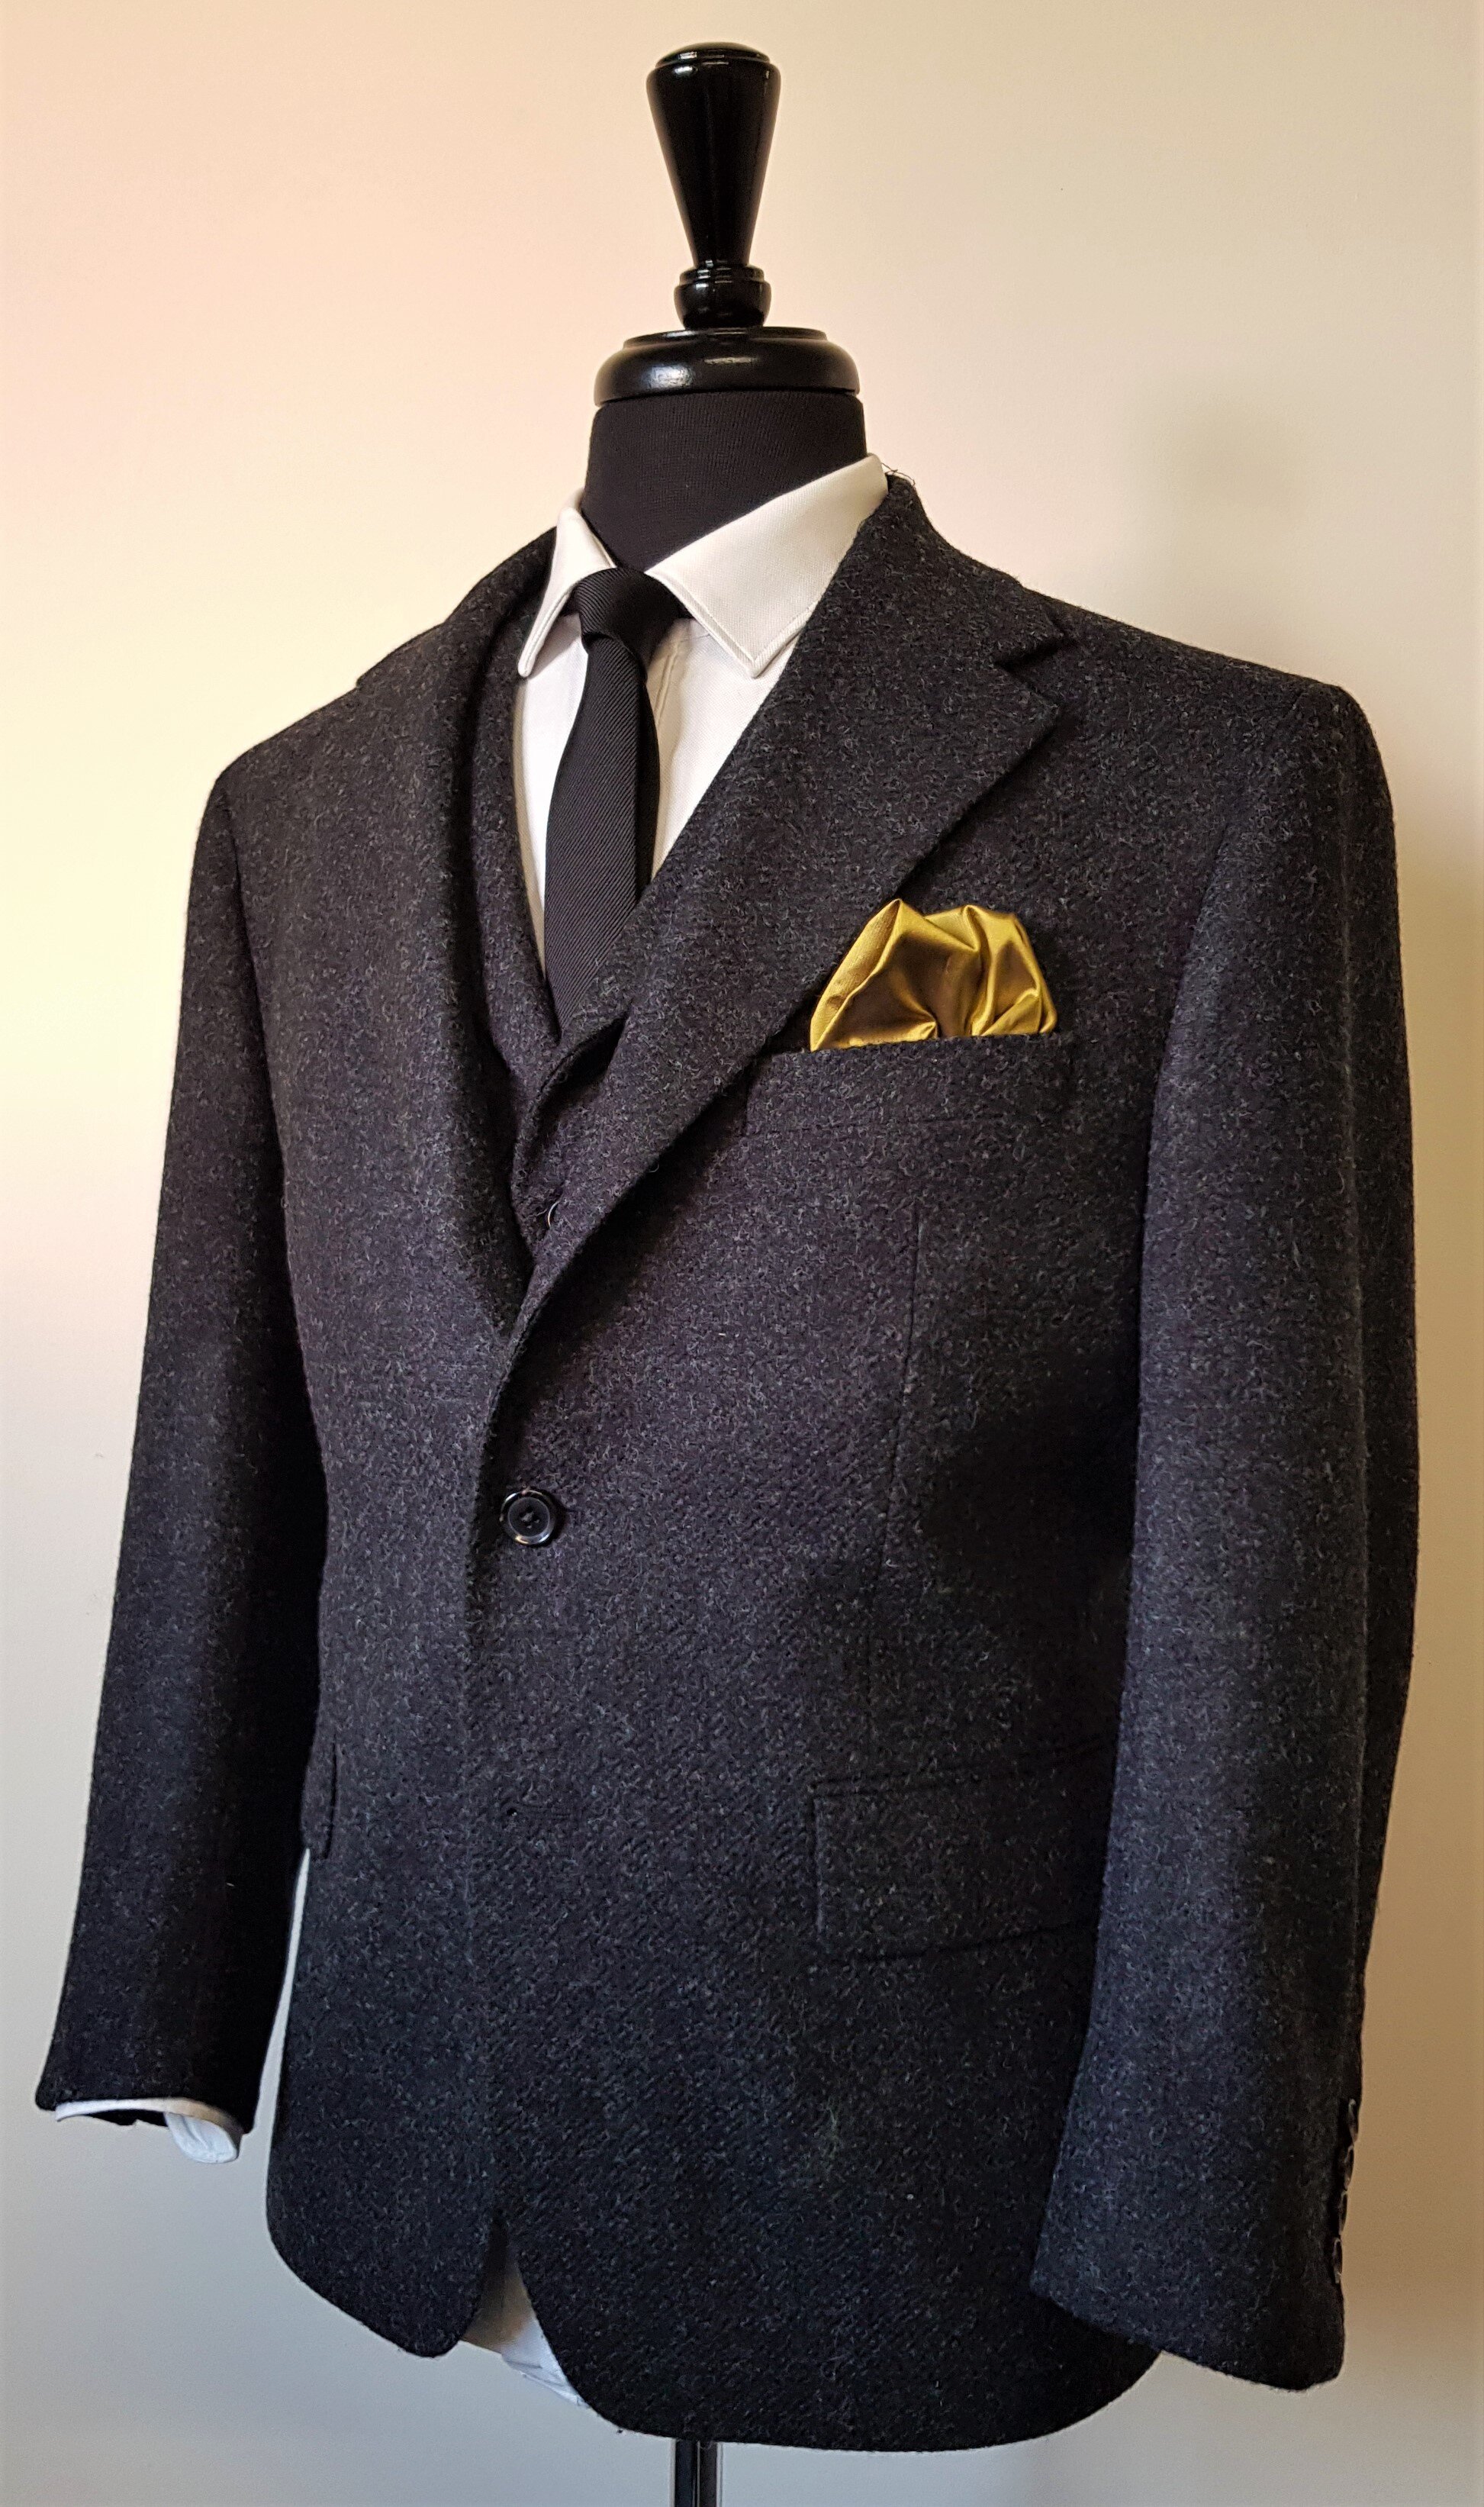 3 Piece Suit in Charcoal Shetland Tweed (5).jpg